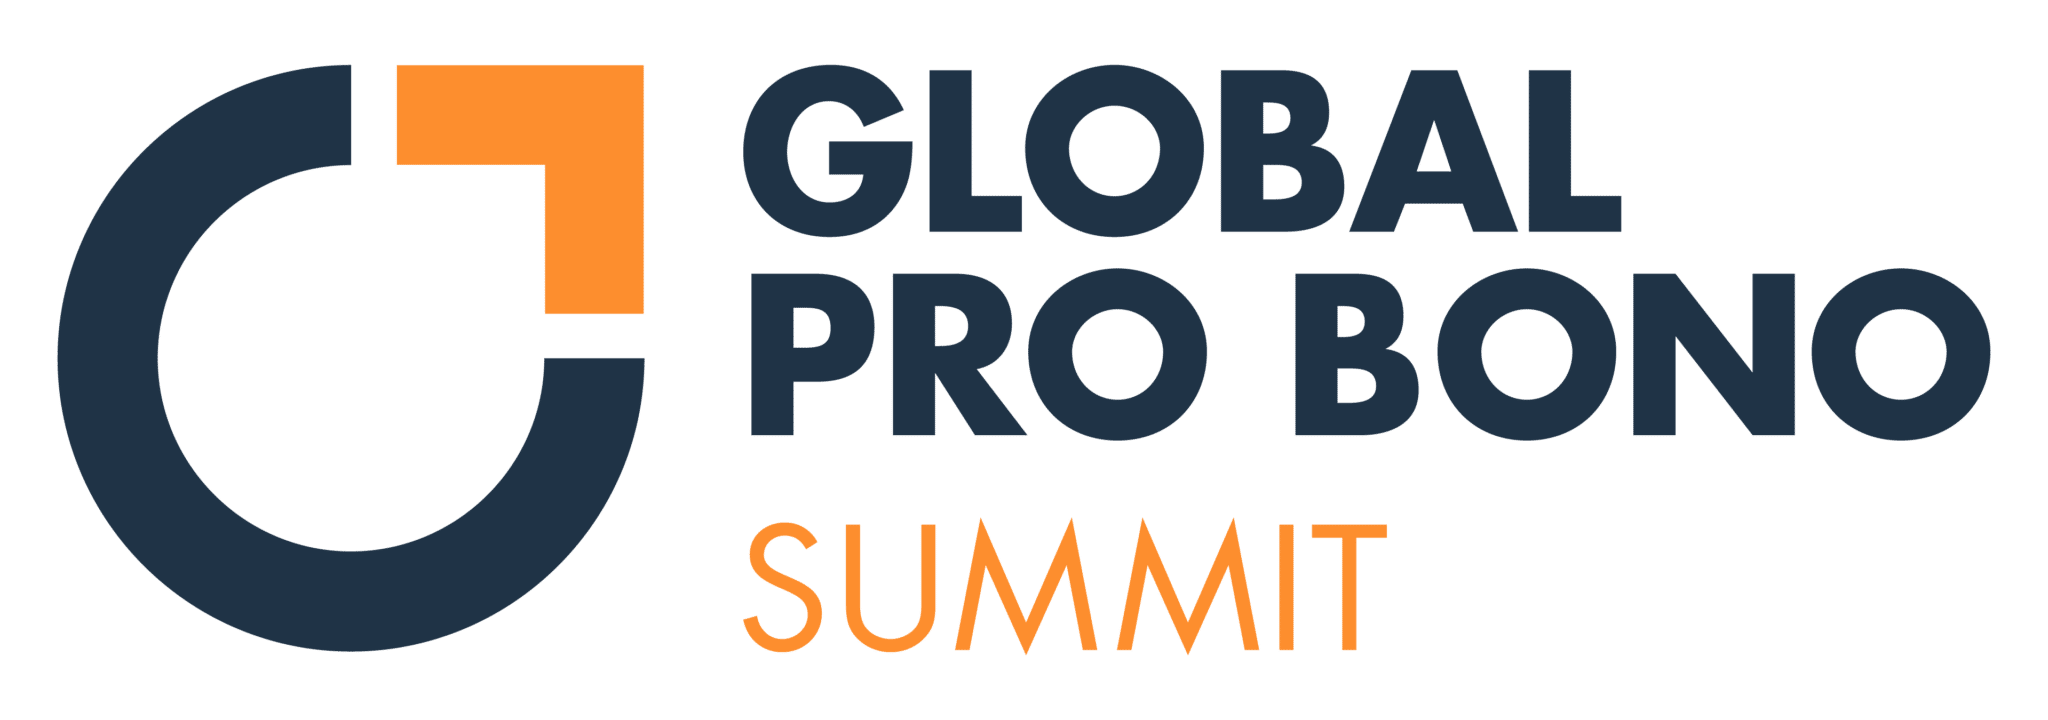 Global Pro Bono Summit